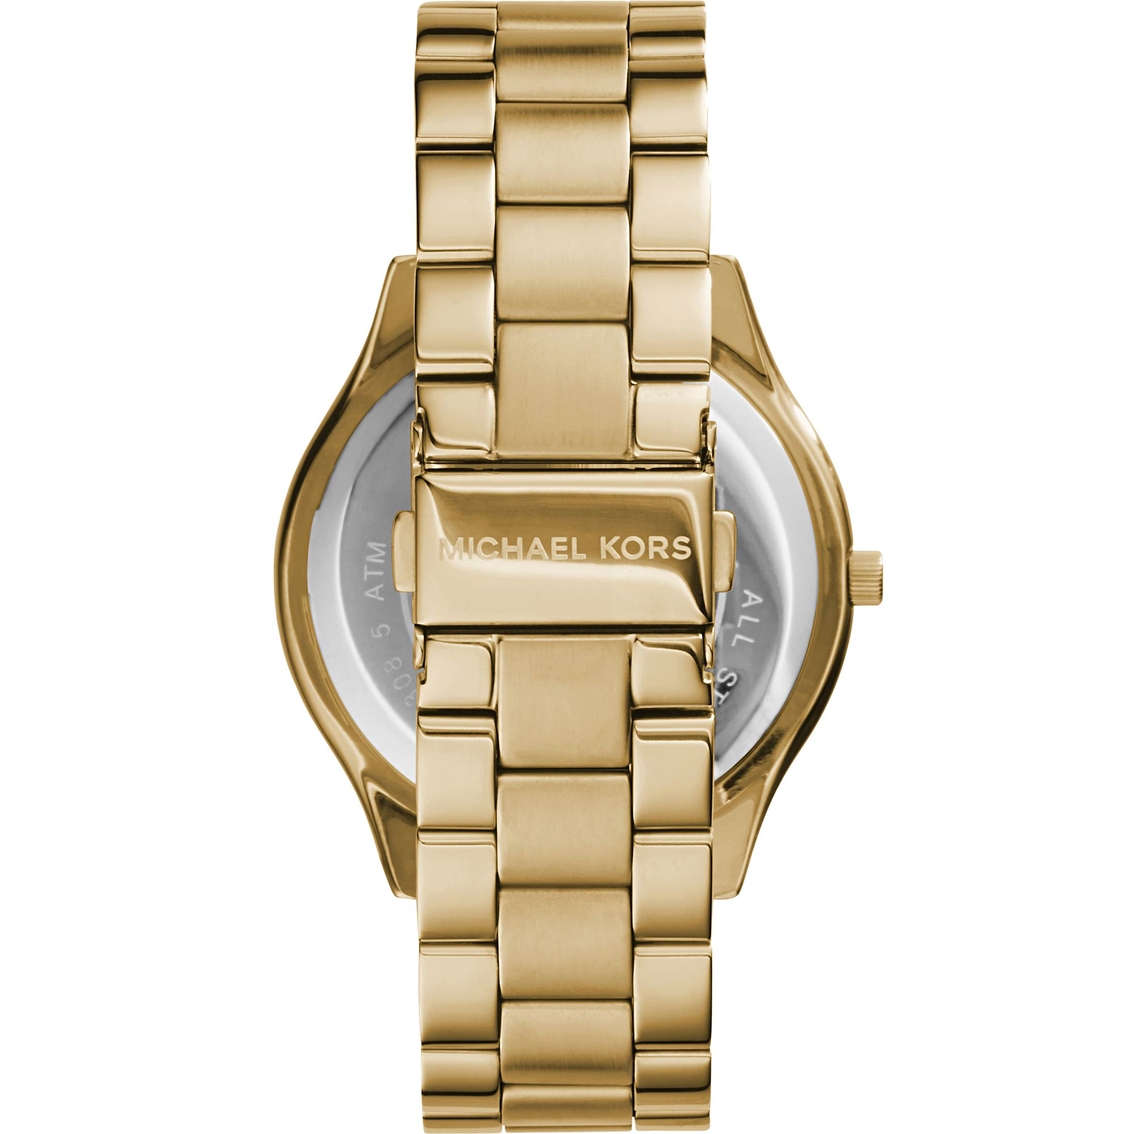 Michael Kors Women's Goldtone Runway Slim Watch 42MM MK3179 - Image 3 of 3